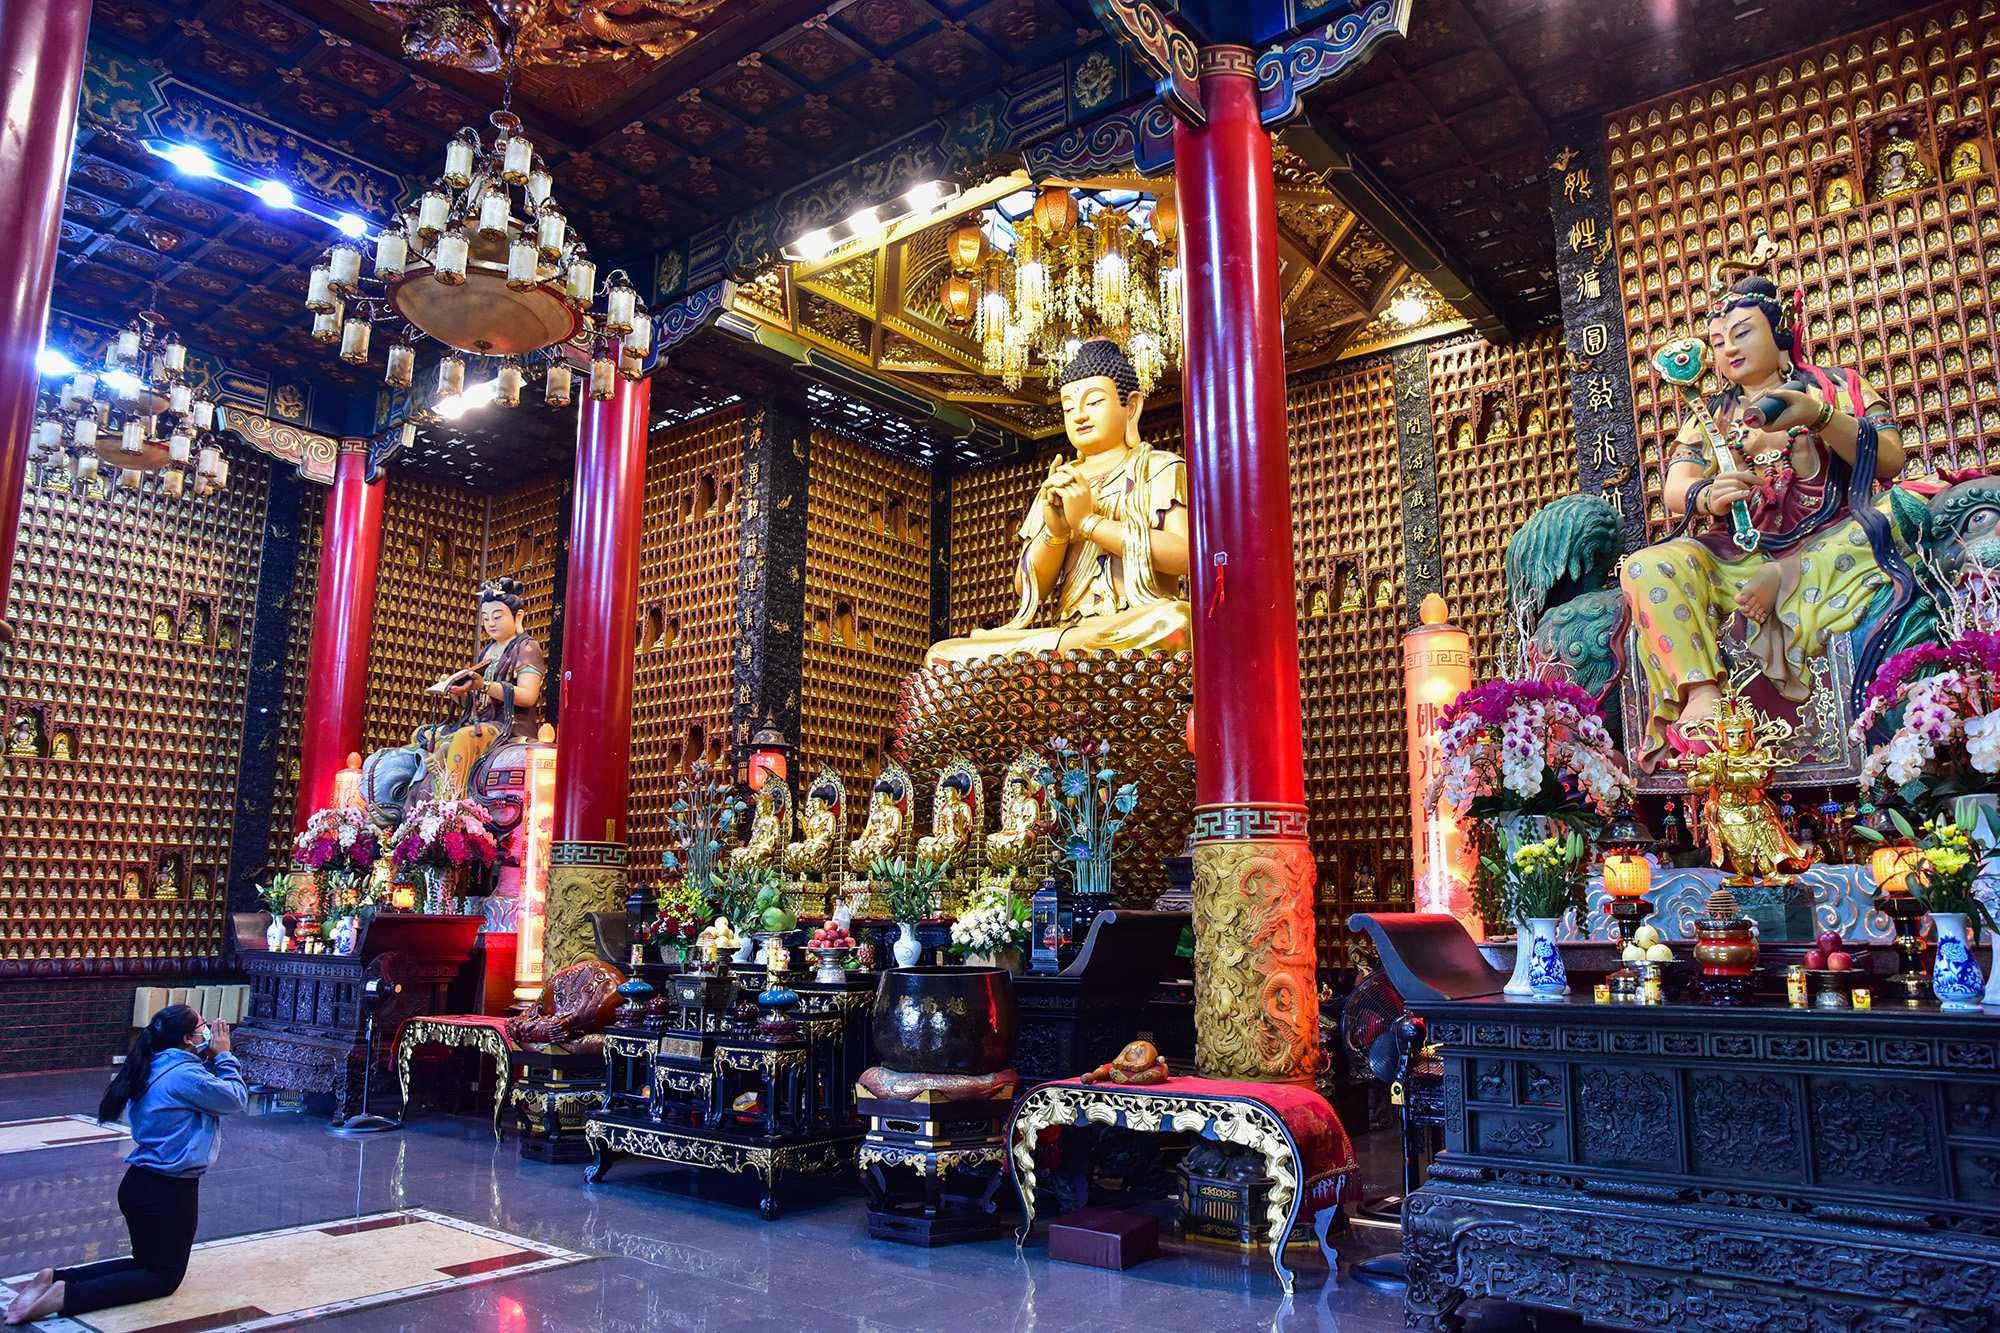 Kỳ vĩ chánh điện chùa trưng biện 10.000 tượng Phật ở TP.HCM - 2